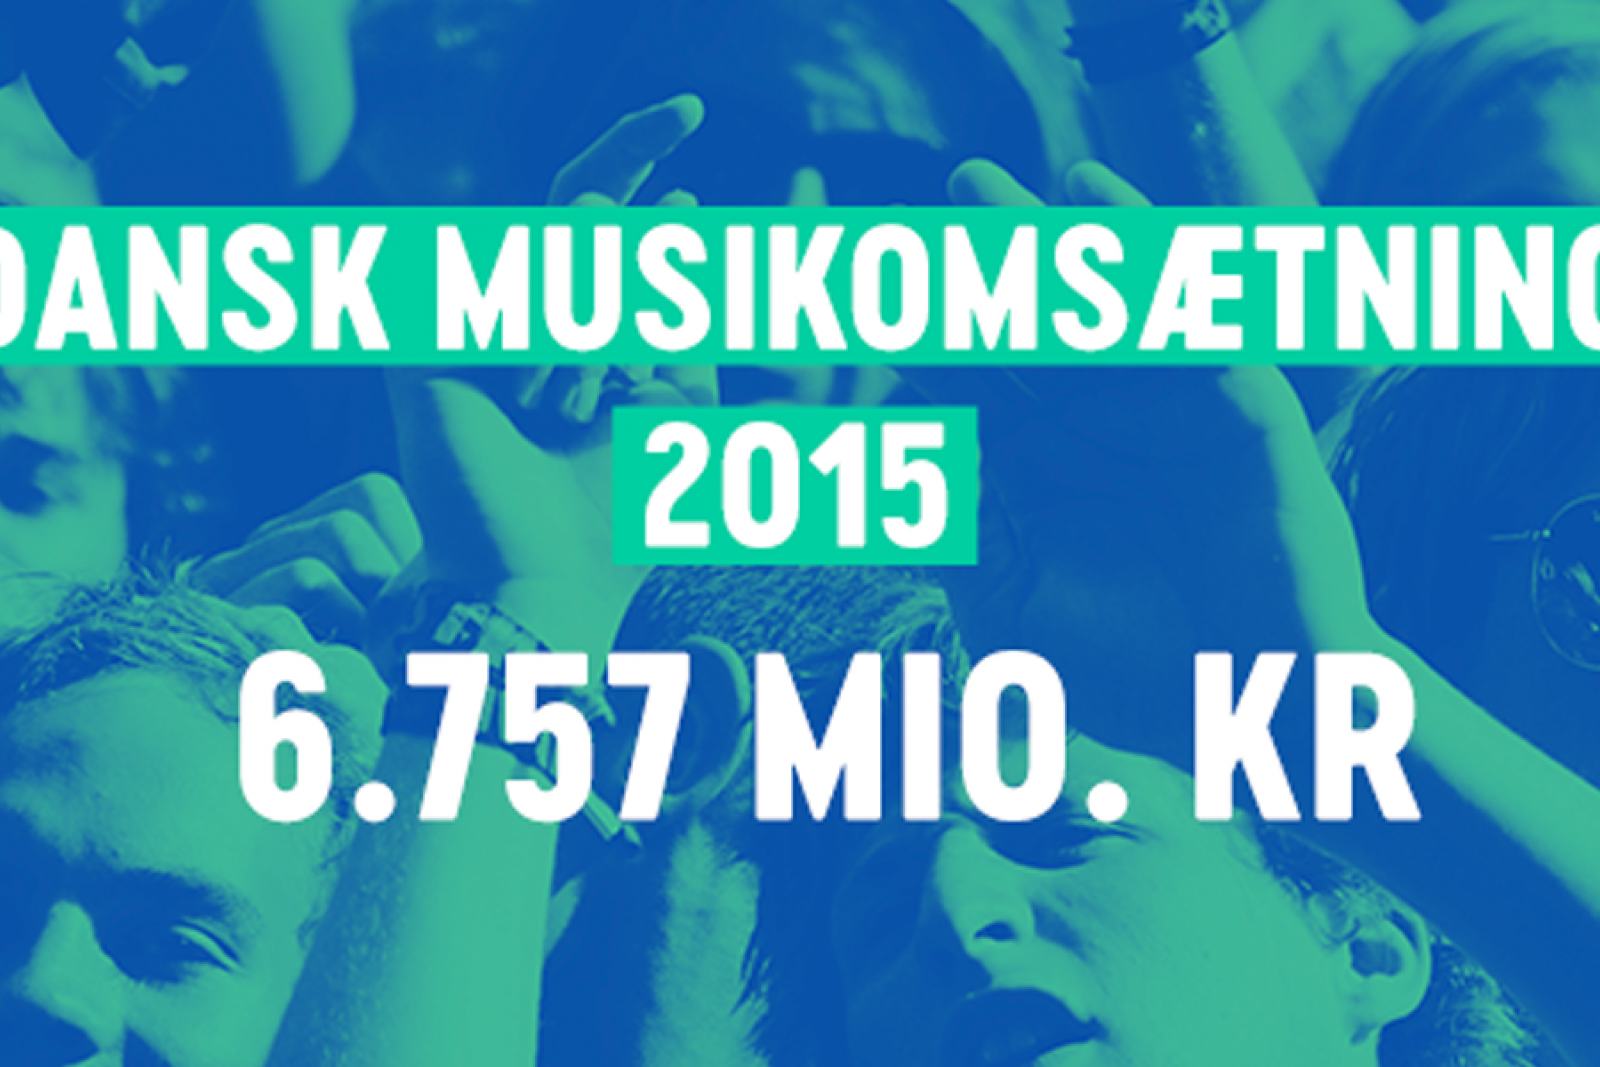 Dansk musik omsætter for milliarder